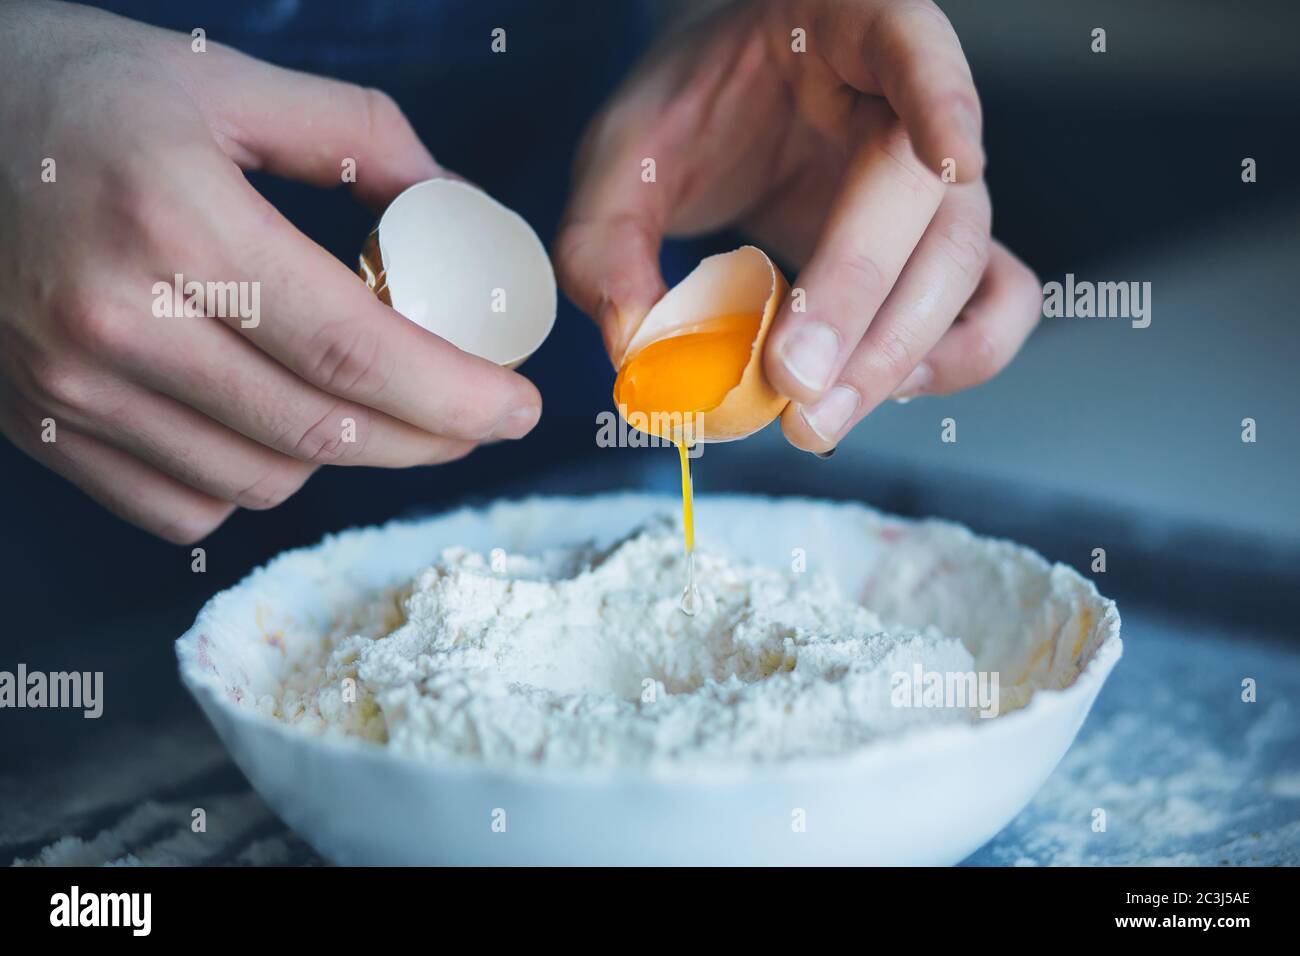 Un uomo ha rotto il guscio di un uovo di pollo e sta per versarlo in una ciotola di farina per fare l'impasto. Cucina casalinga. Foto Stock